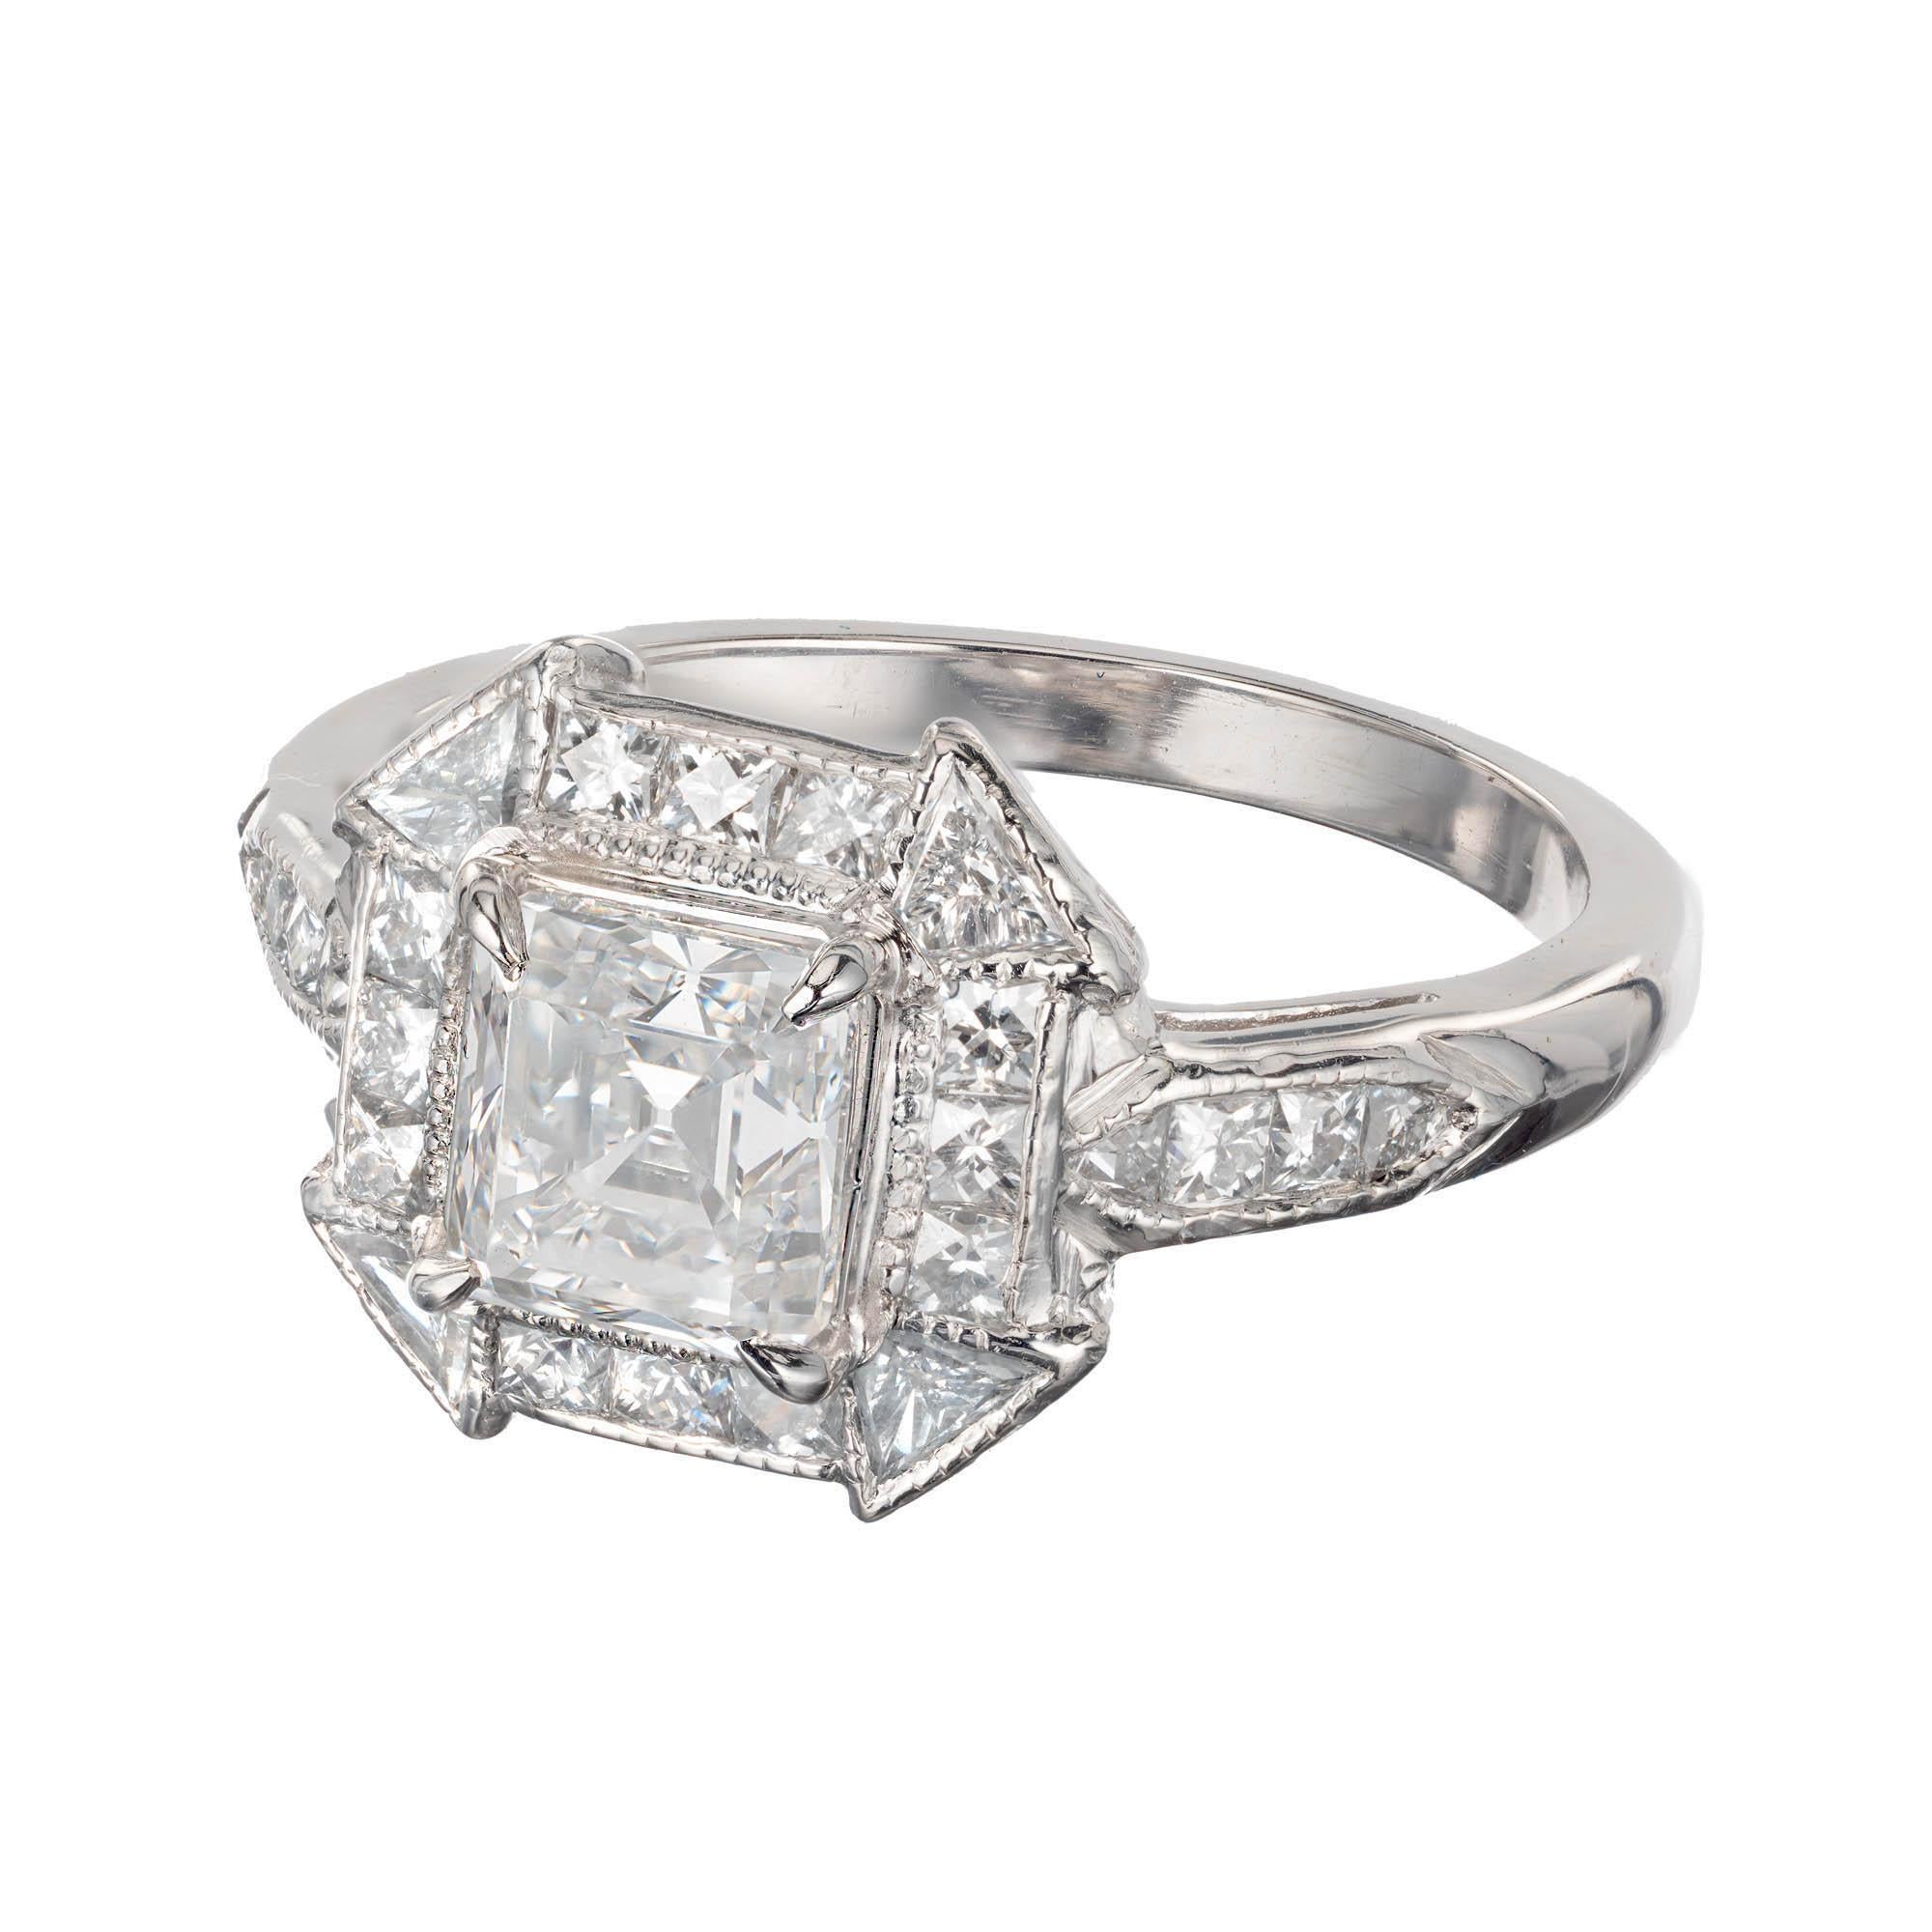 Peter Suchy 1.21 Carat Asscher Cut Diamond Platinum Engagement Ring For Sale 1